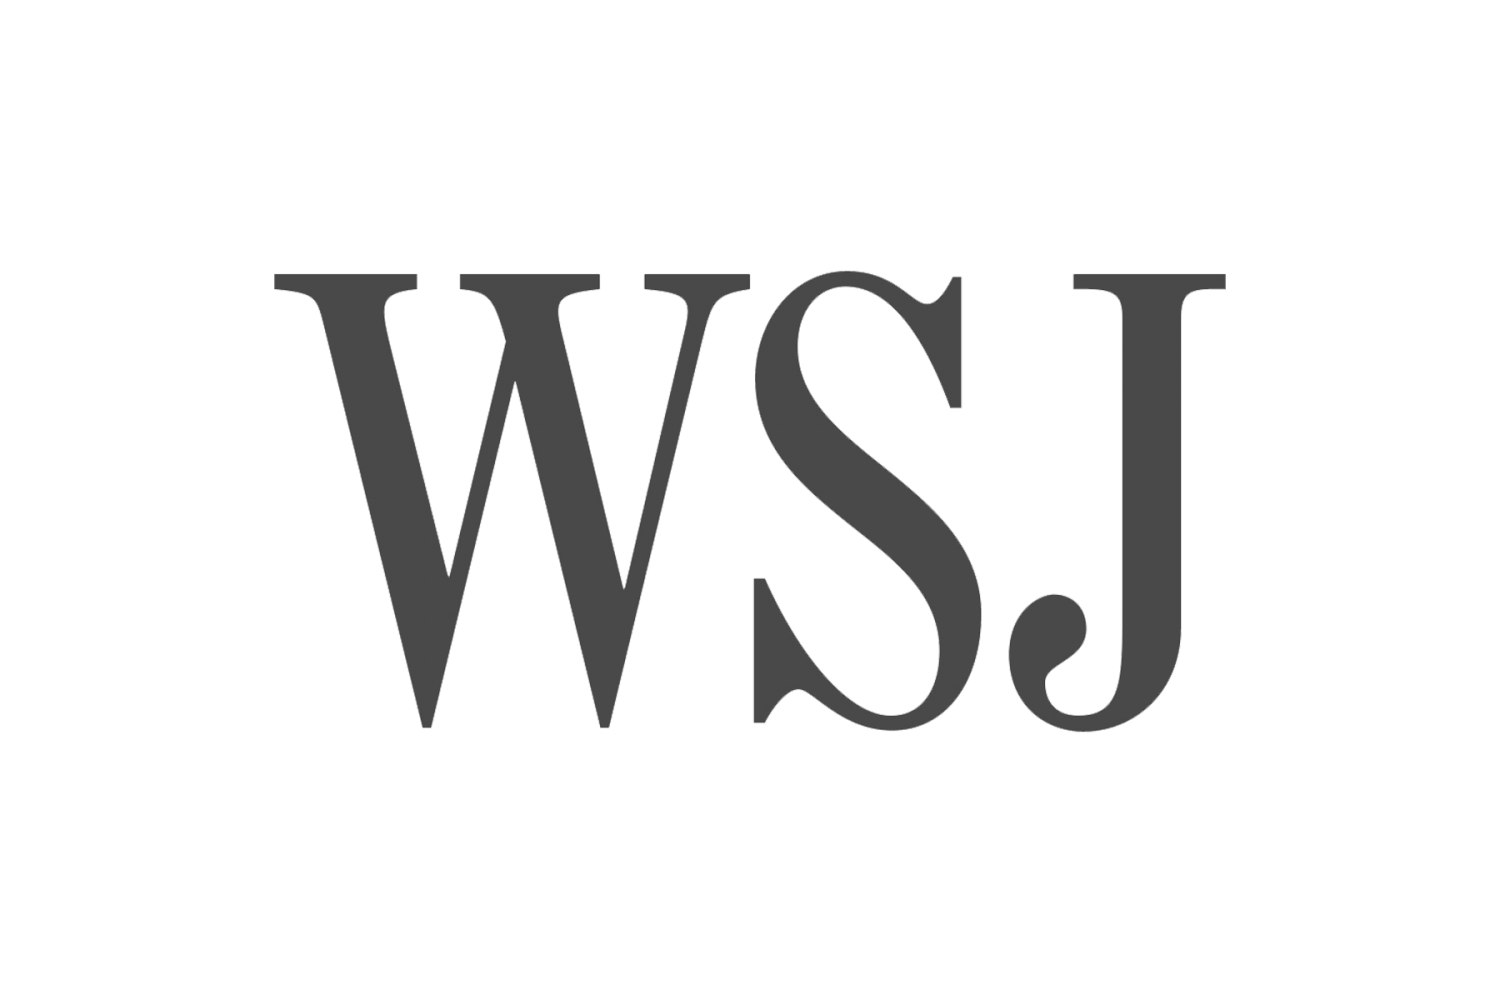 The-Wall-Street-Journal-emblem